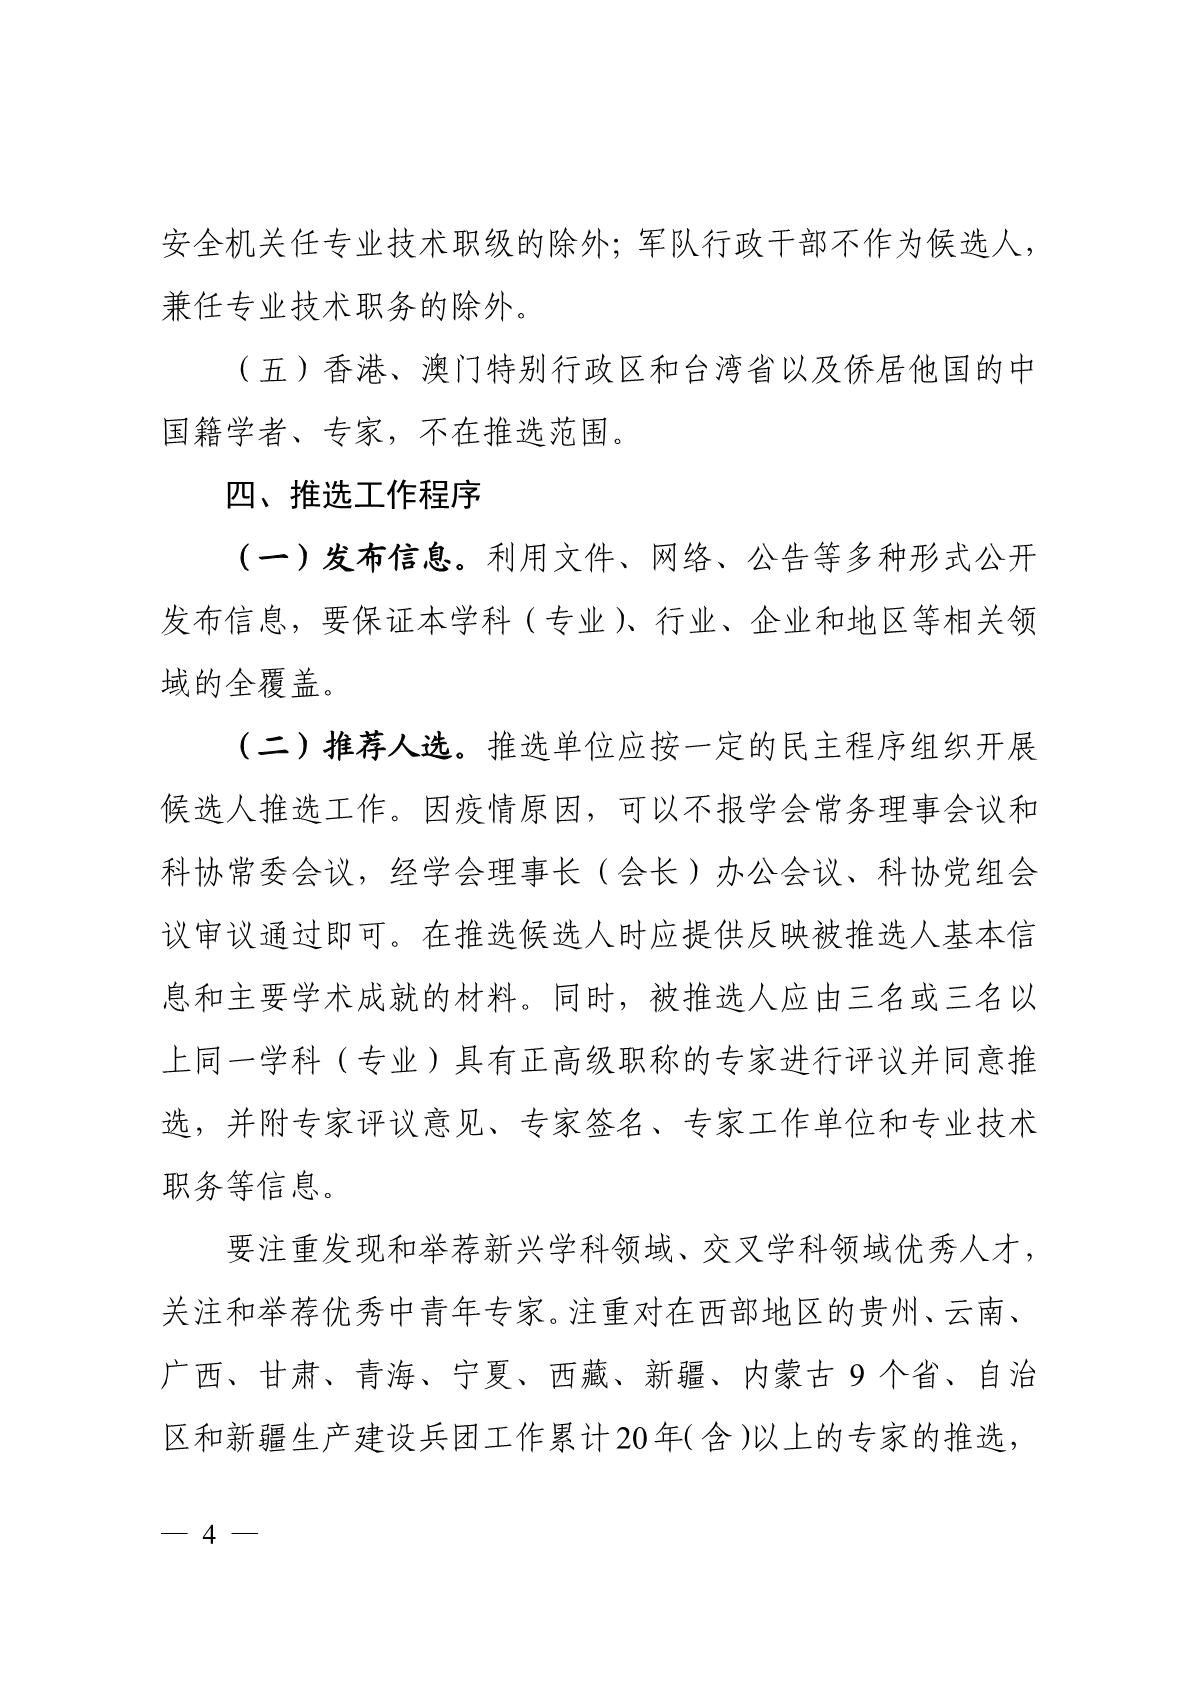 关于组织推选2021年中国工程院院士候选人的通知_4.JPG